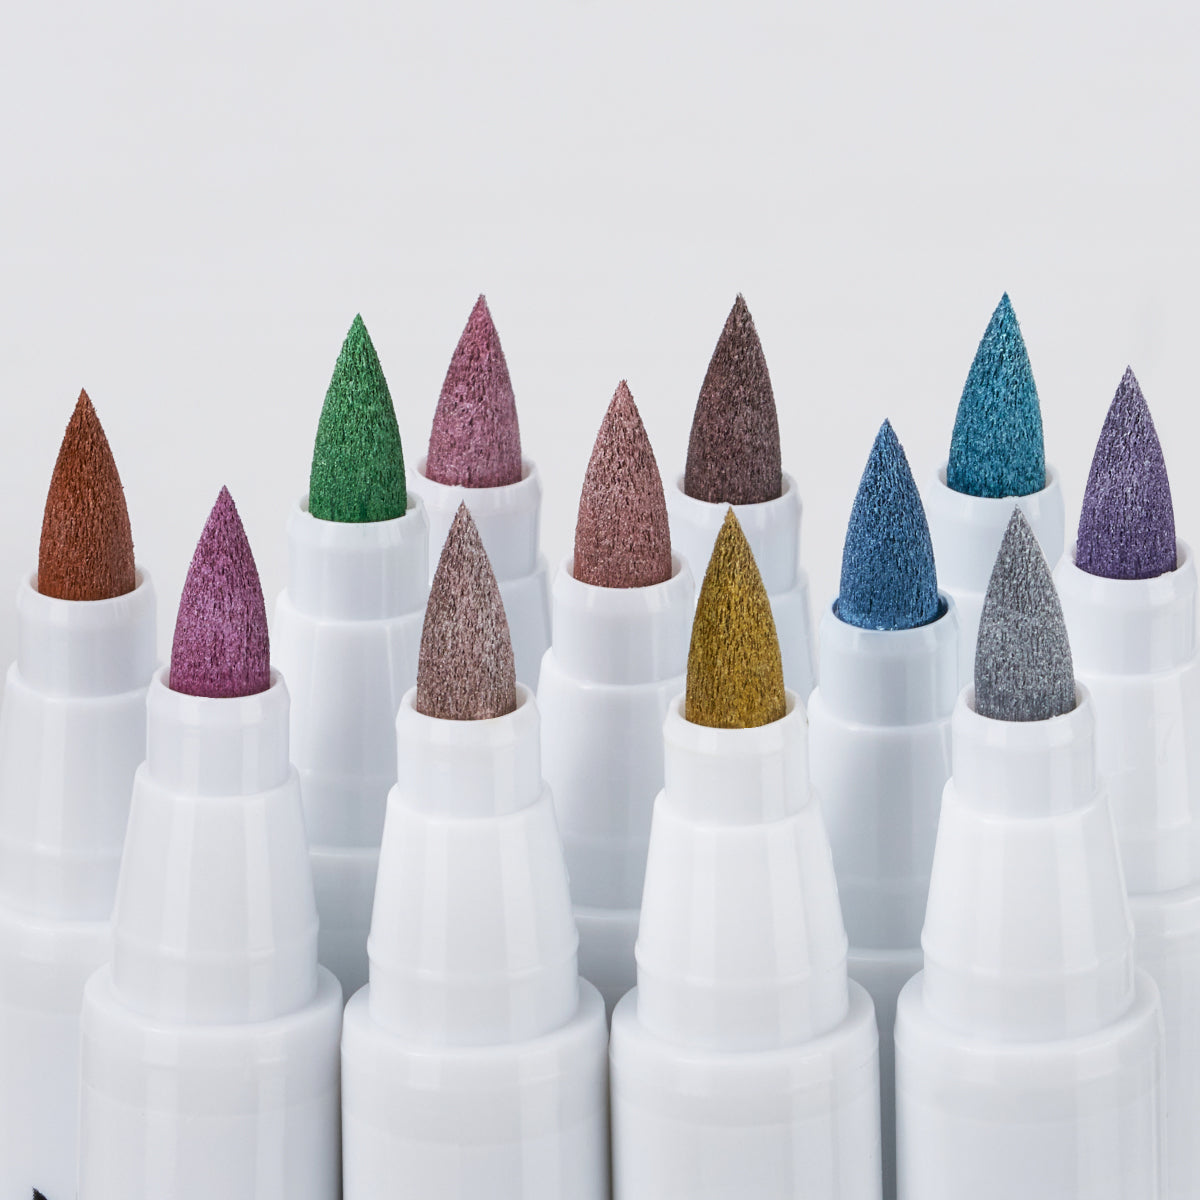 Arrtx 12 Metallic Colors Acrylic Paint Marker Brush Tip Paint Pens